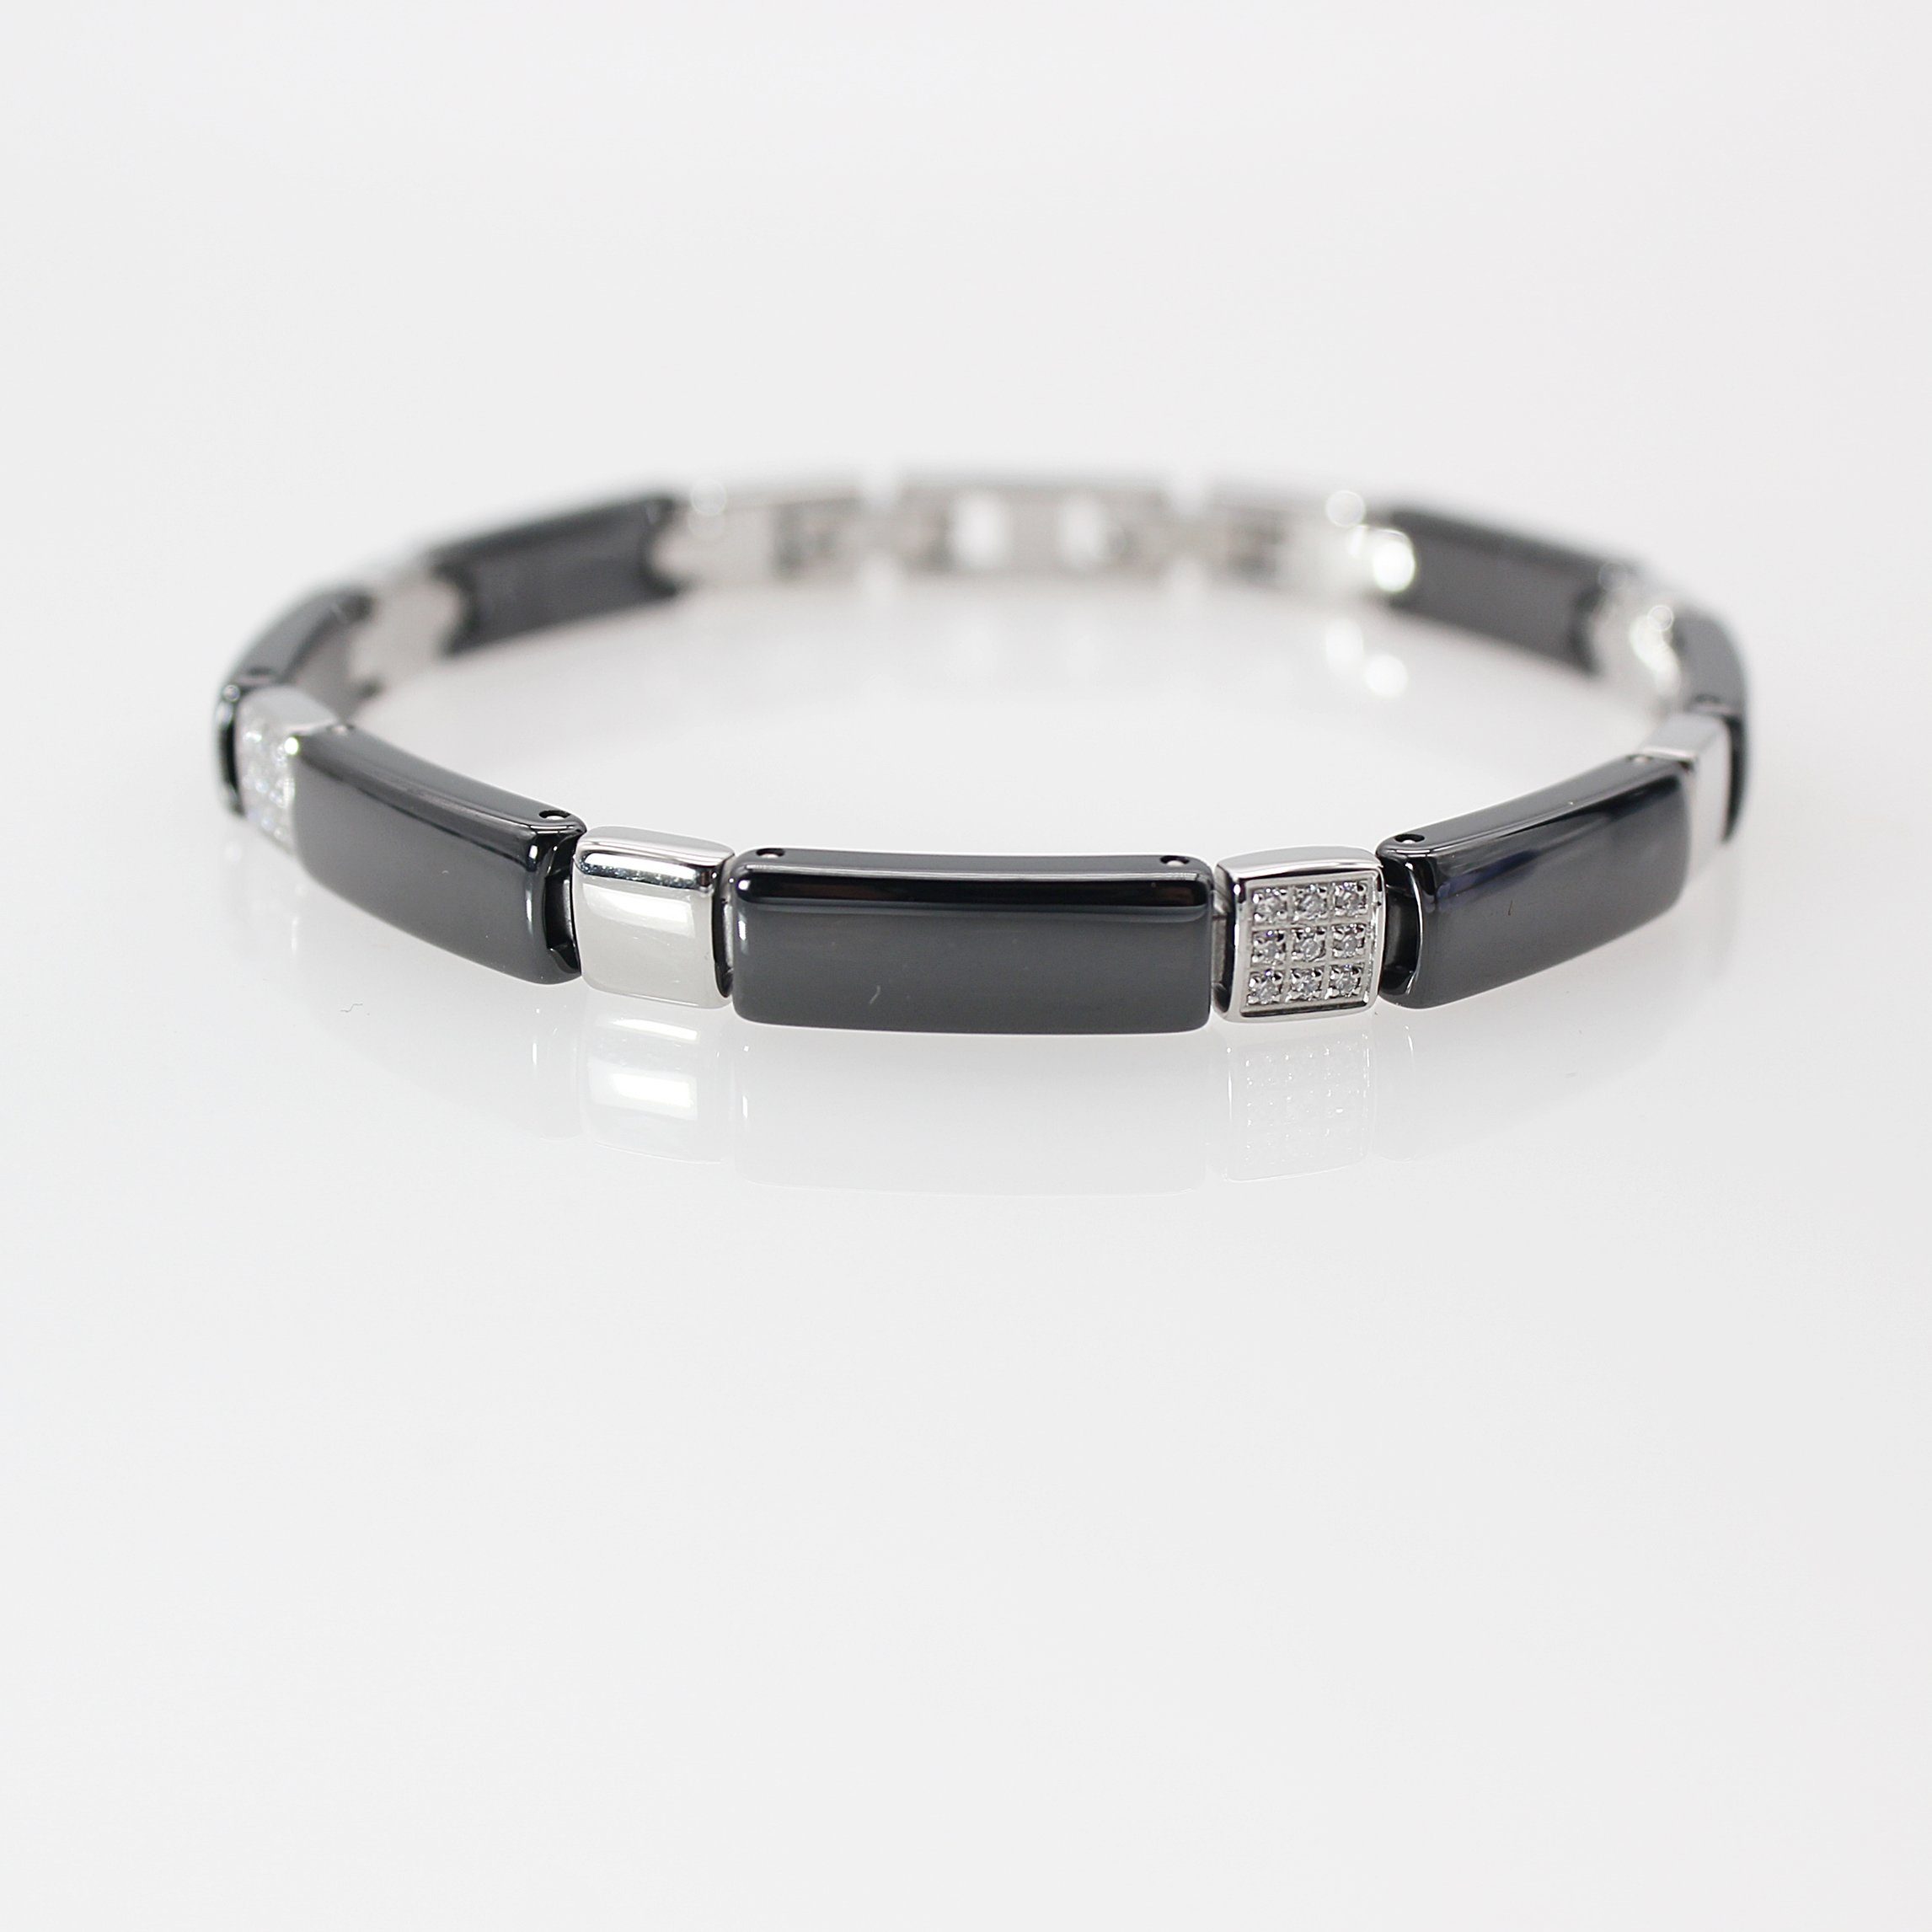 ELLAWIL Gliederarmband Armband aus 20 6 inklusive Schwarz, Silber und Breite (Armbandlänge Geschenkschachtel mm), cm, Keramik Edelstahl